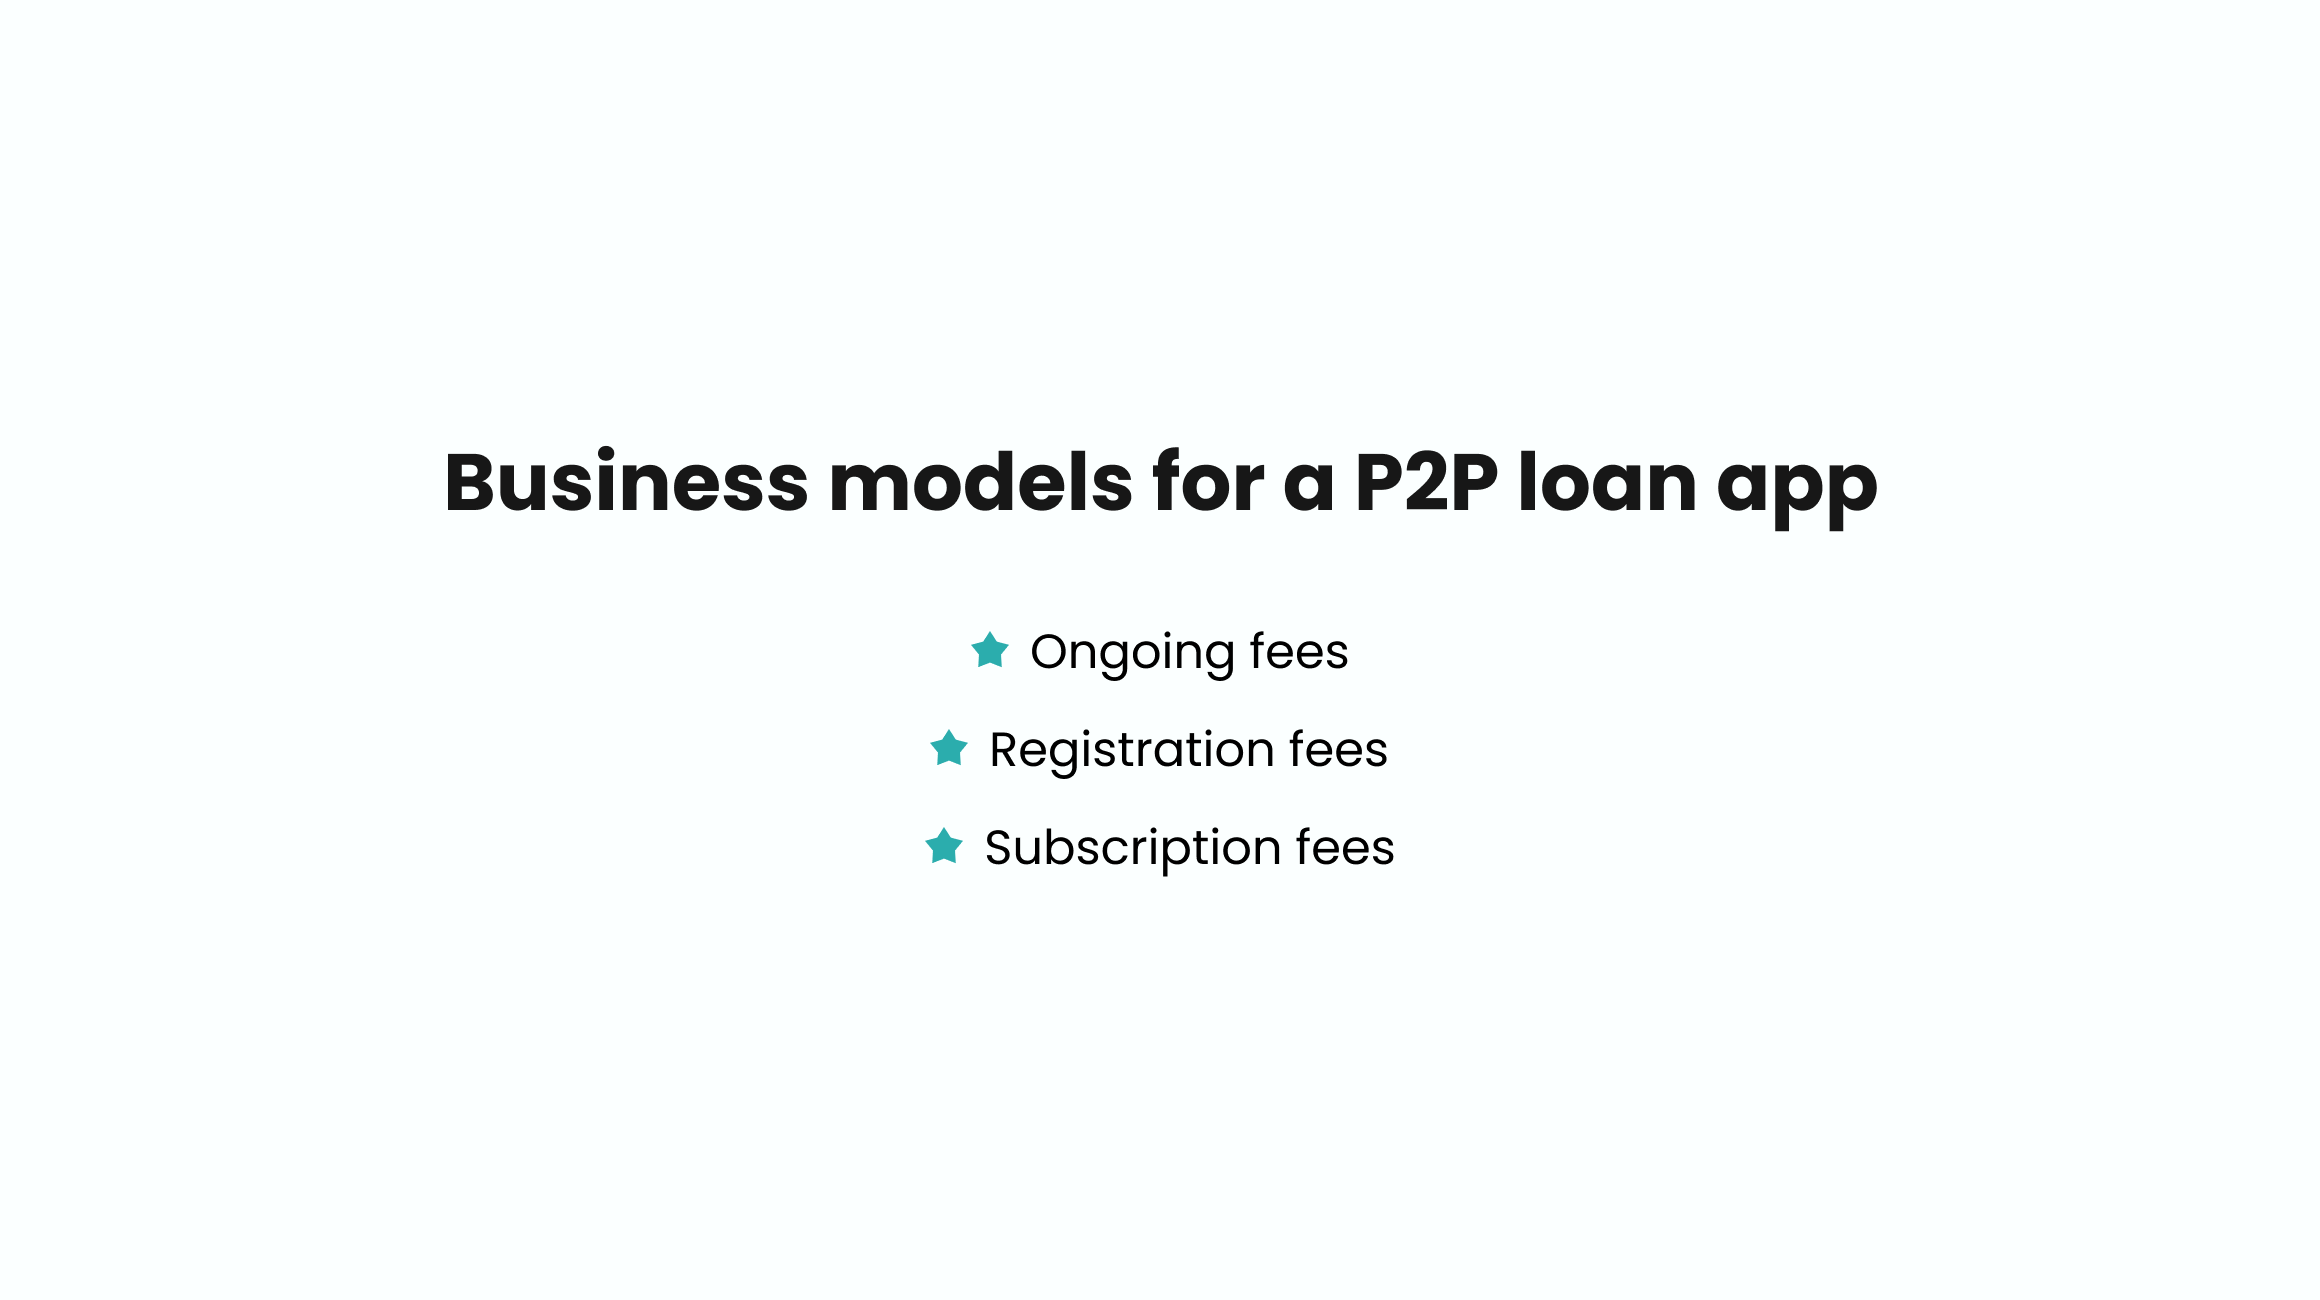 Peer-to-Peer Lending App Business models